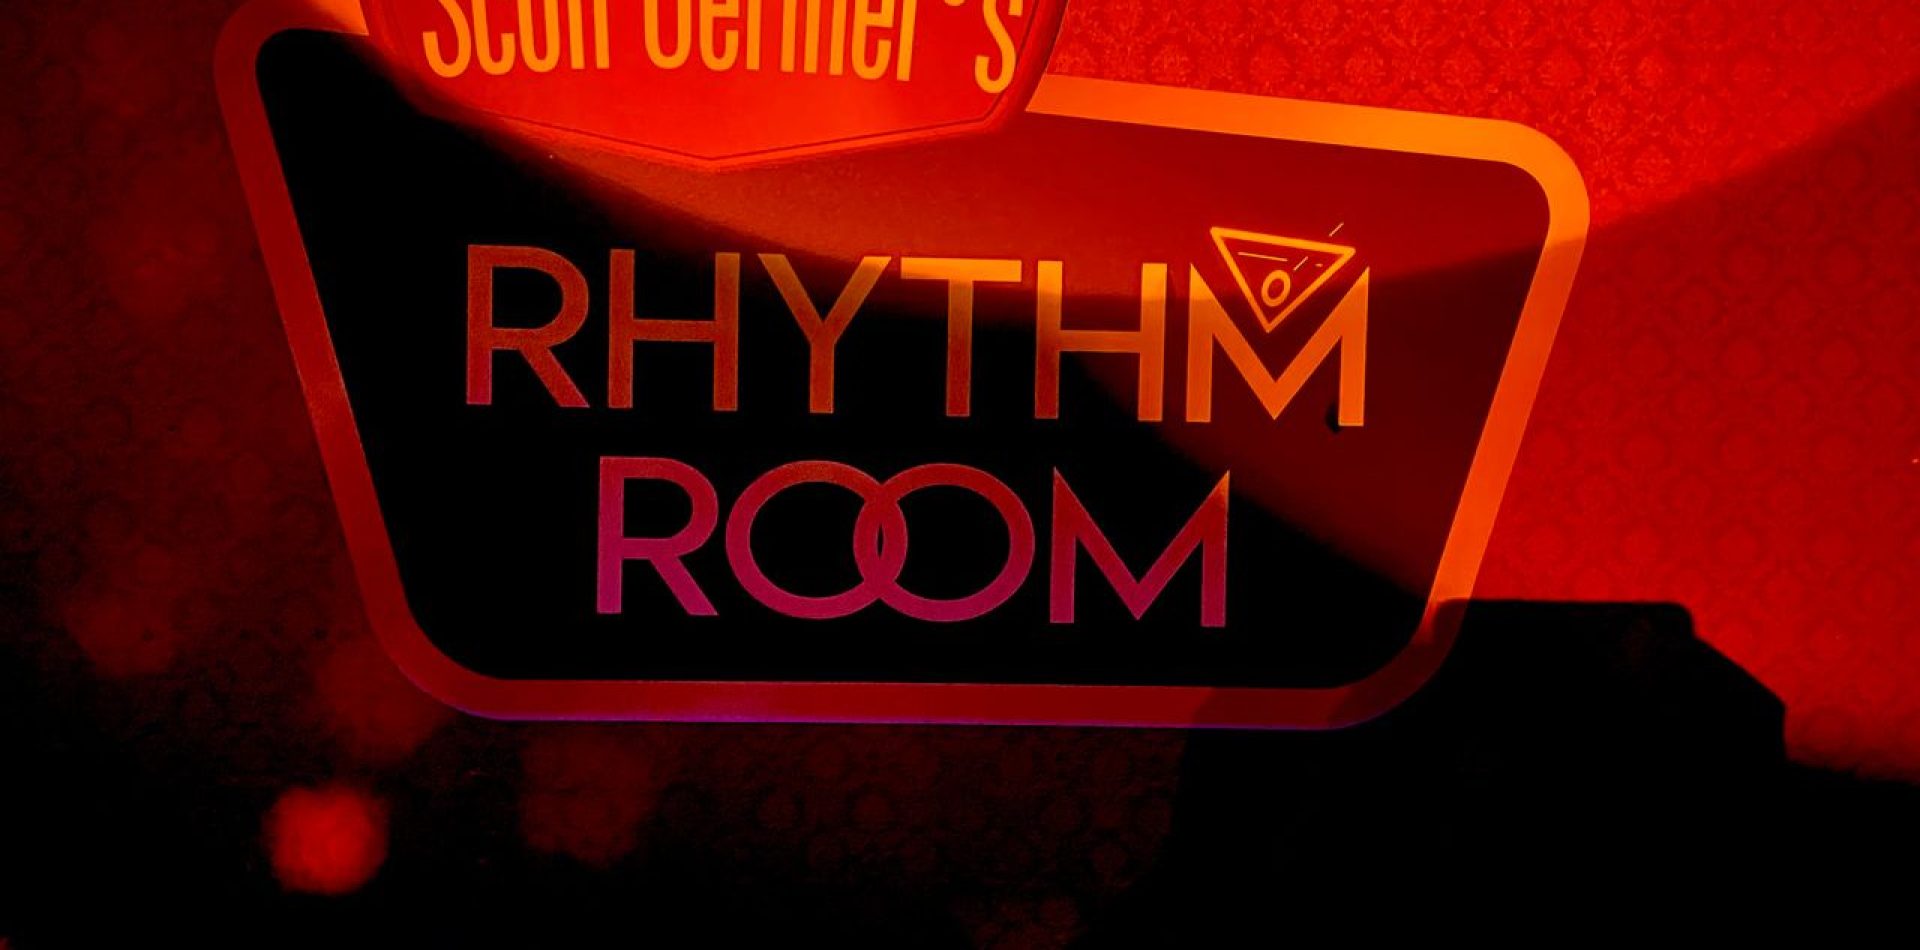 Scott Gertner's Rhythm Room bar in houston texas